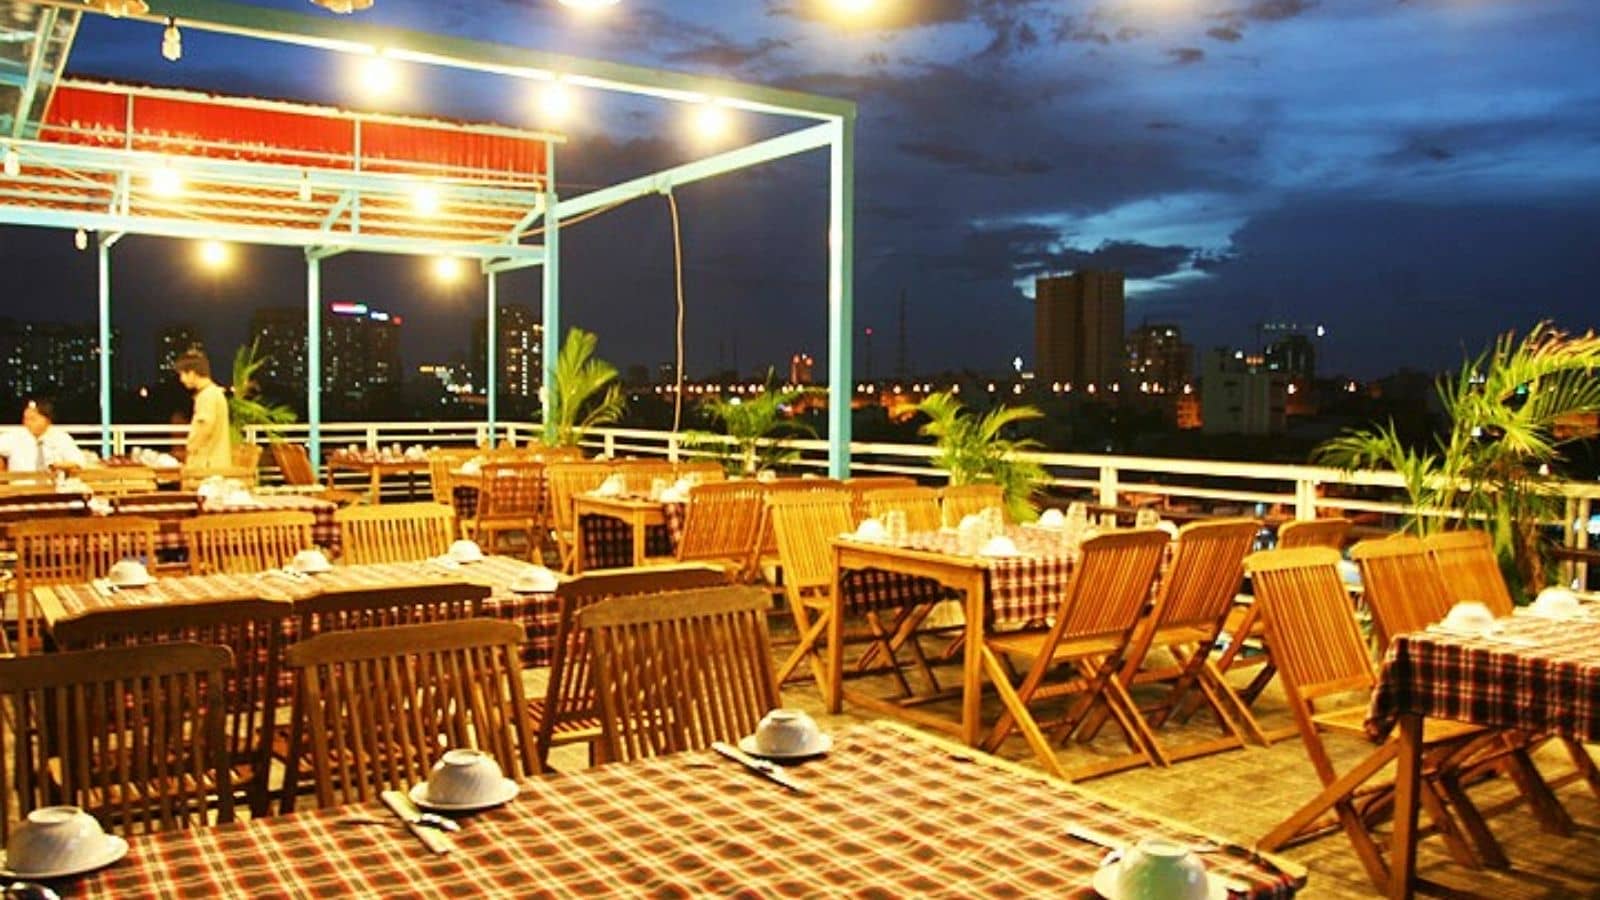 Nhà hàng Hàng Dương quận 7 với nhiều món ăn ngon